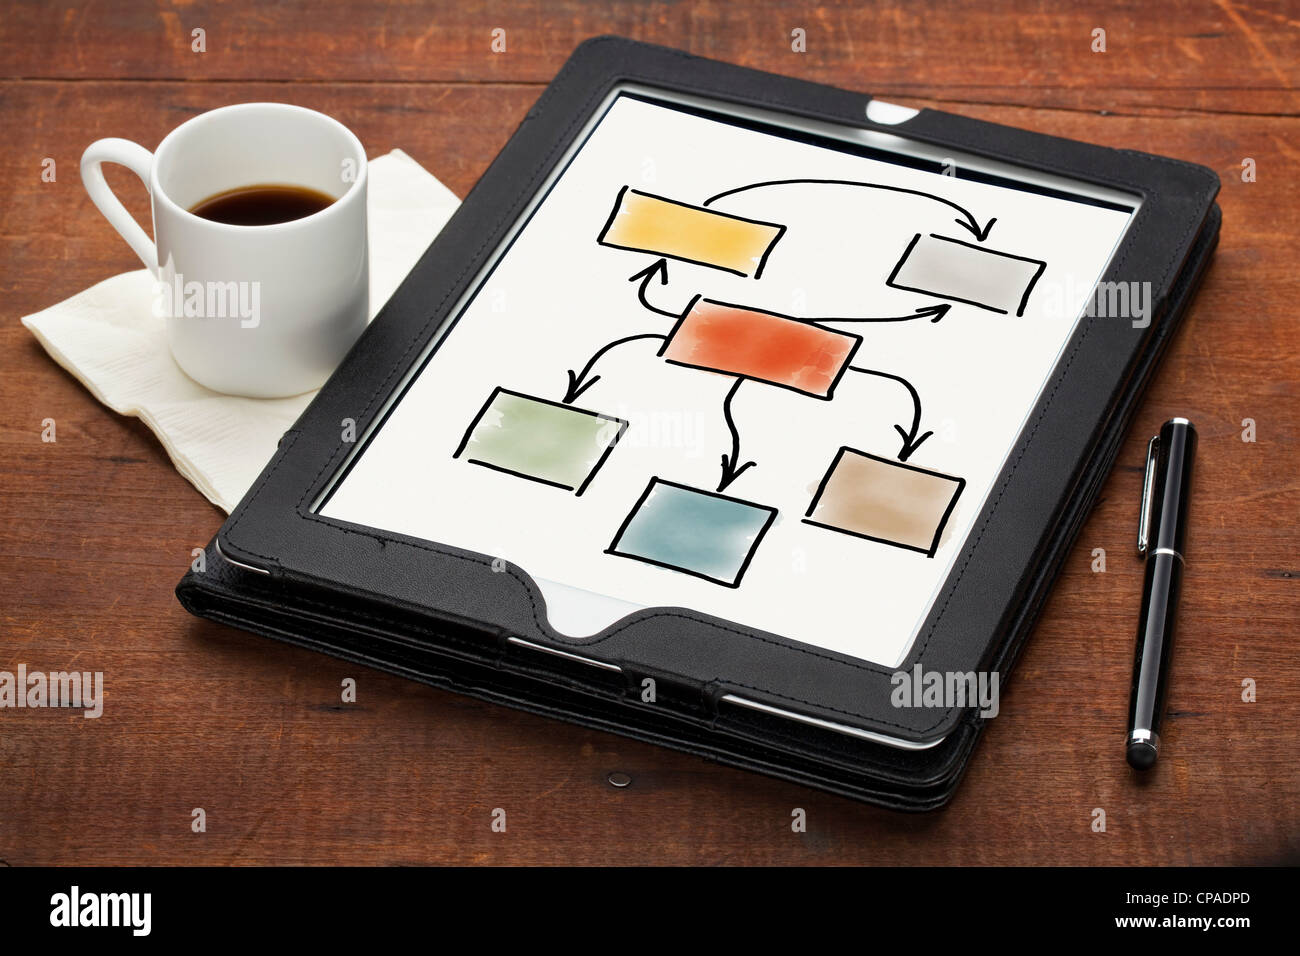 Concept de la productivité - organigramme vierge coloré sur un ordinateur tablette avec stylet et Espresso Coffee cup Banque D'Images